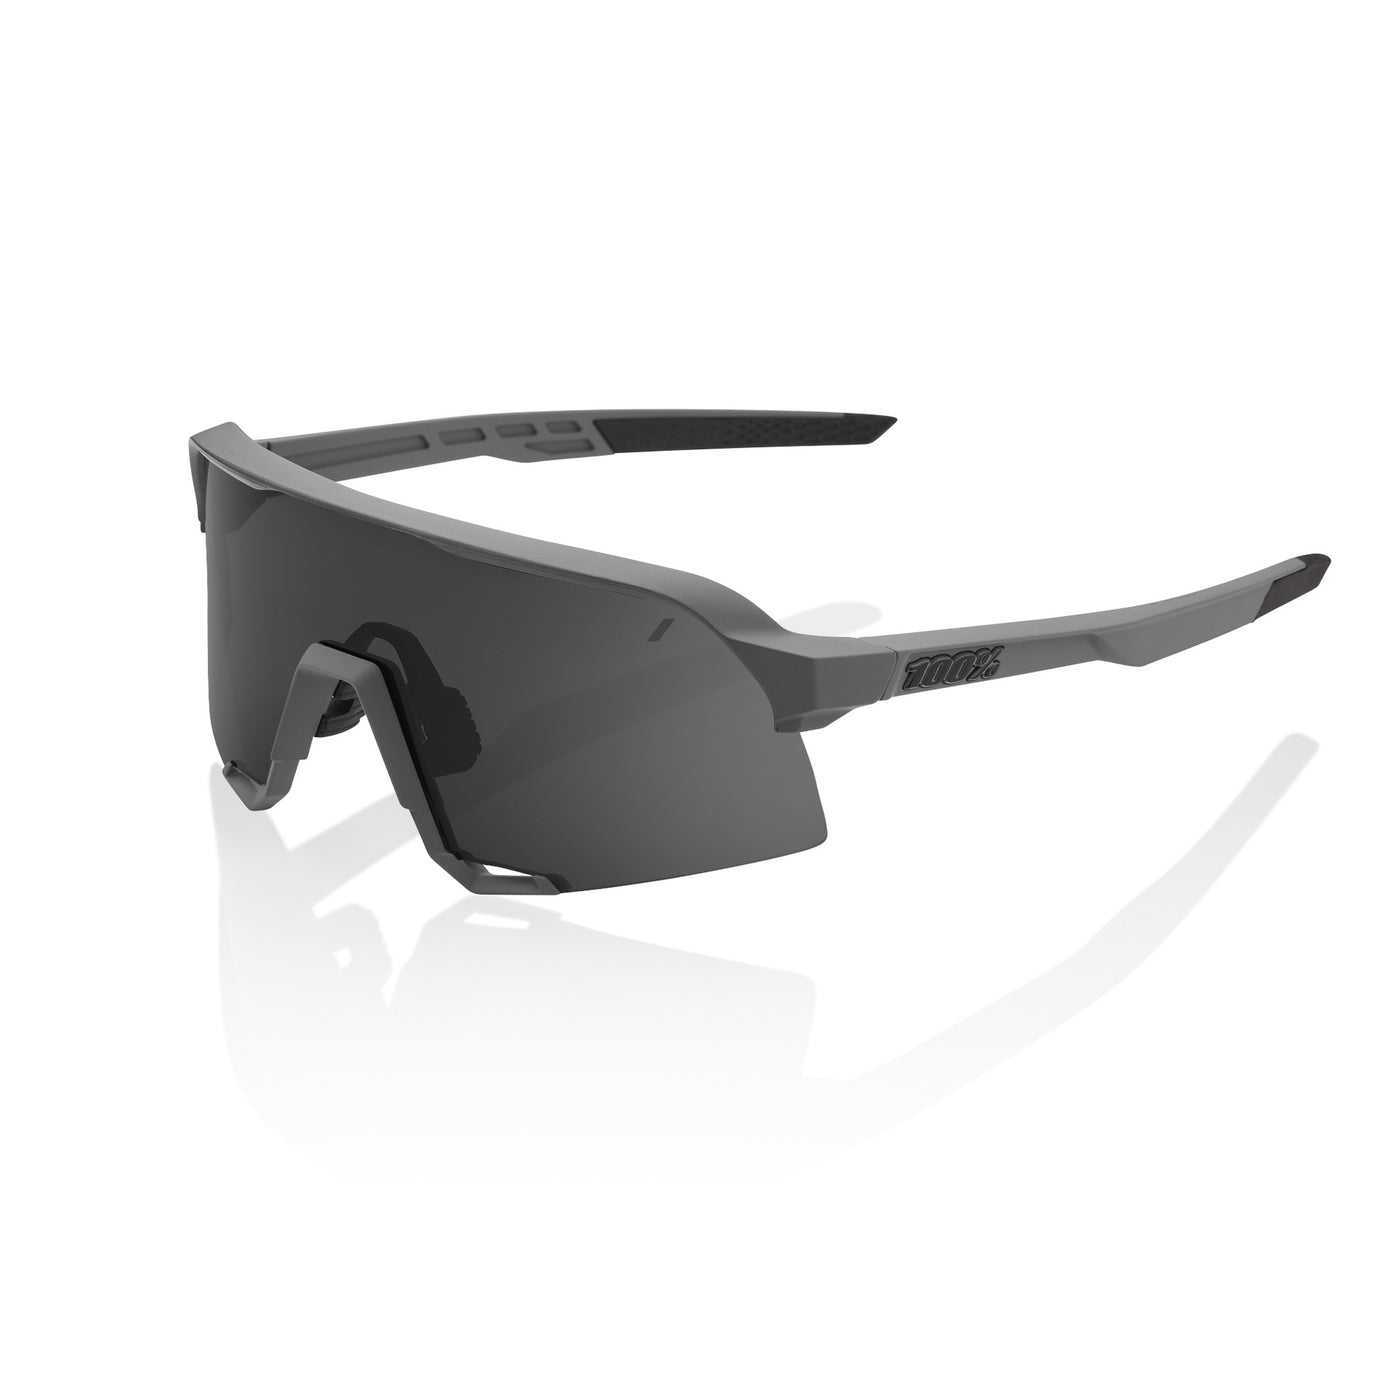 Sunglasses 100% S3 - Matte Cool Grey - Smoke